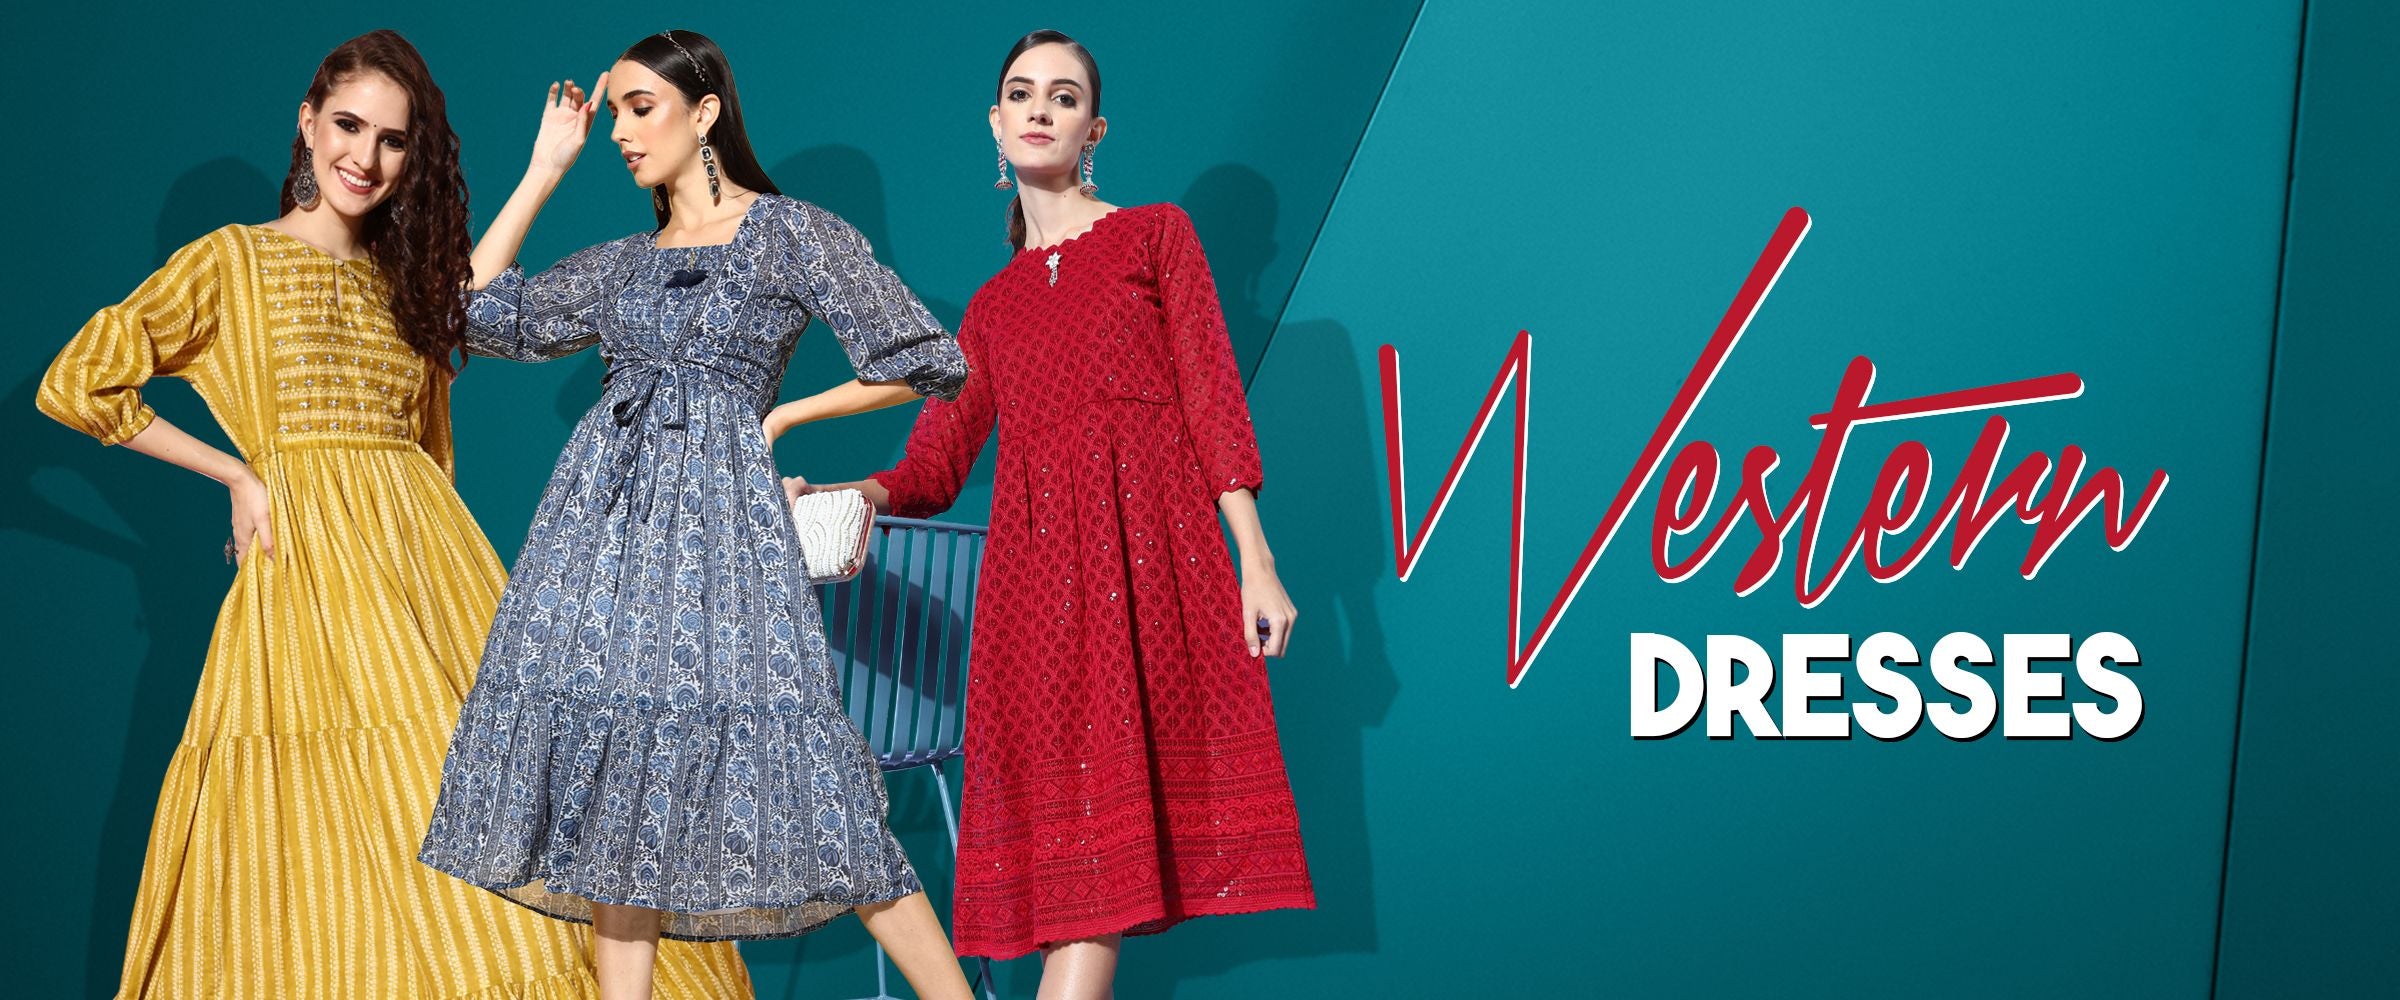 Shop Women's Dresses Online Australia - Cotton Da by CottonDayz on  DeviantArt